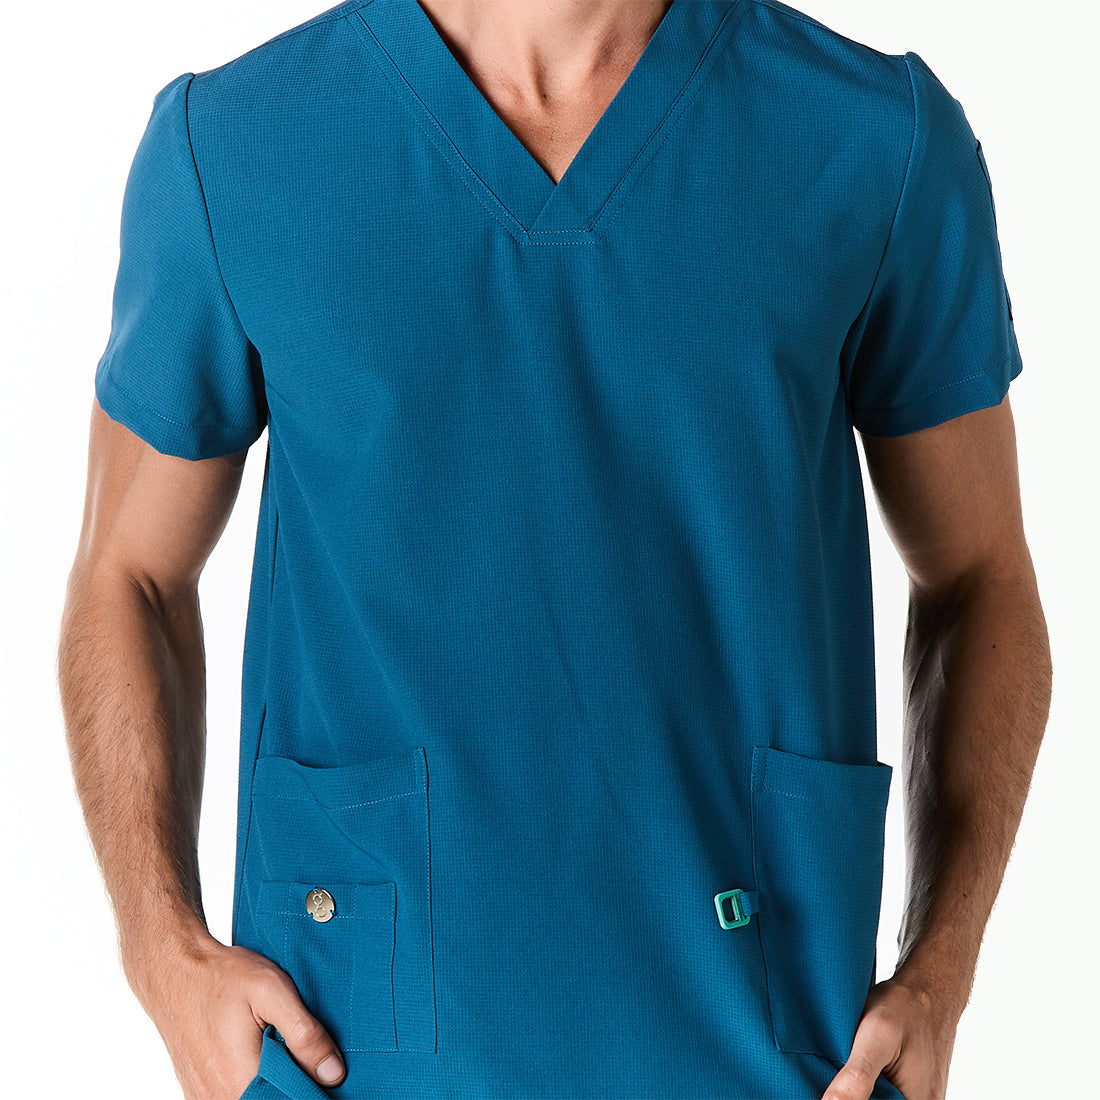 Hombre vistiendo pijama sanitario color azul turquesa con cuello en v y hebilla porta gafete